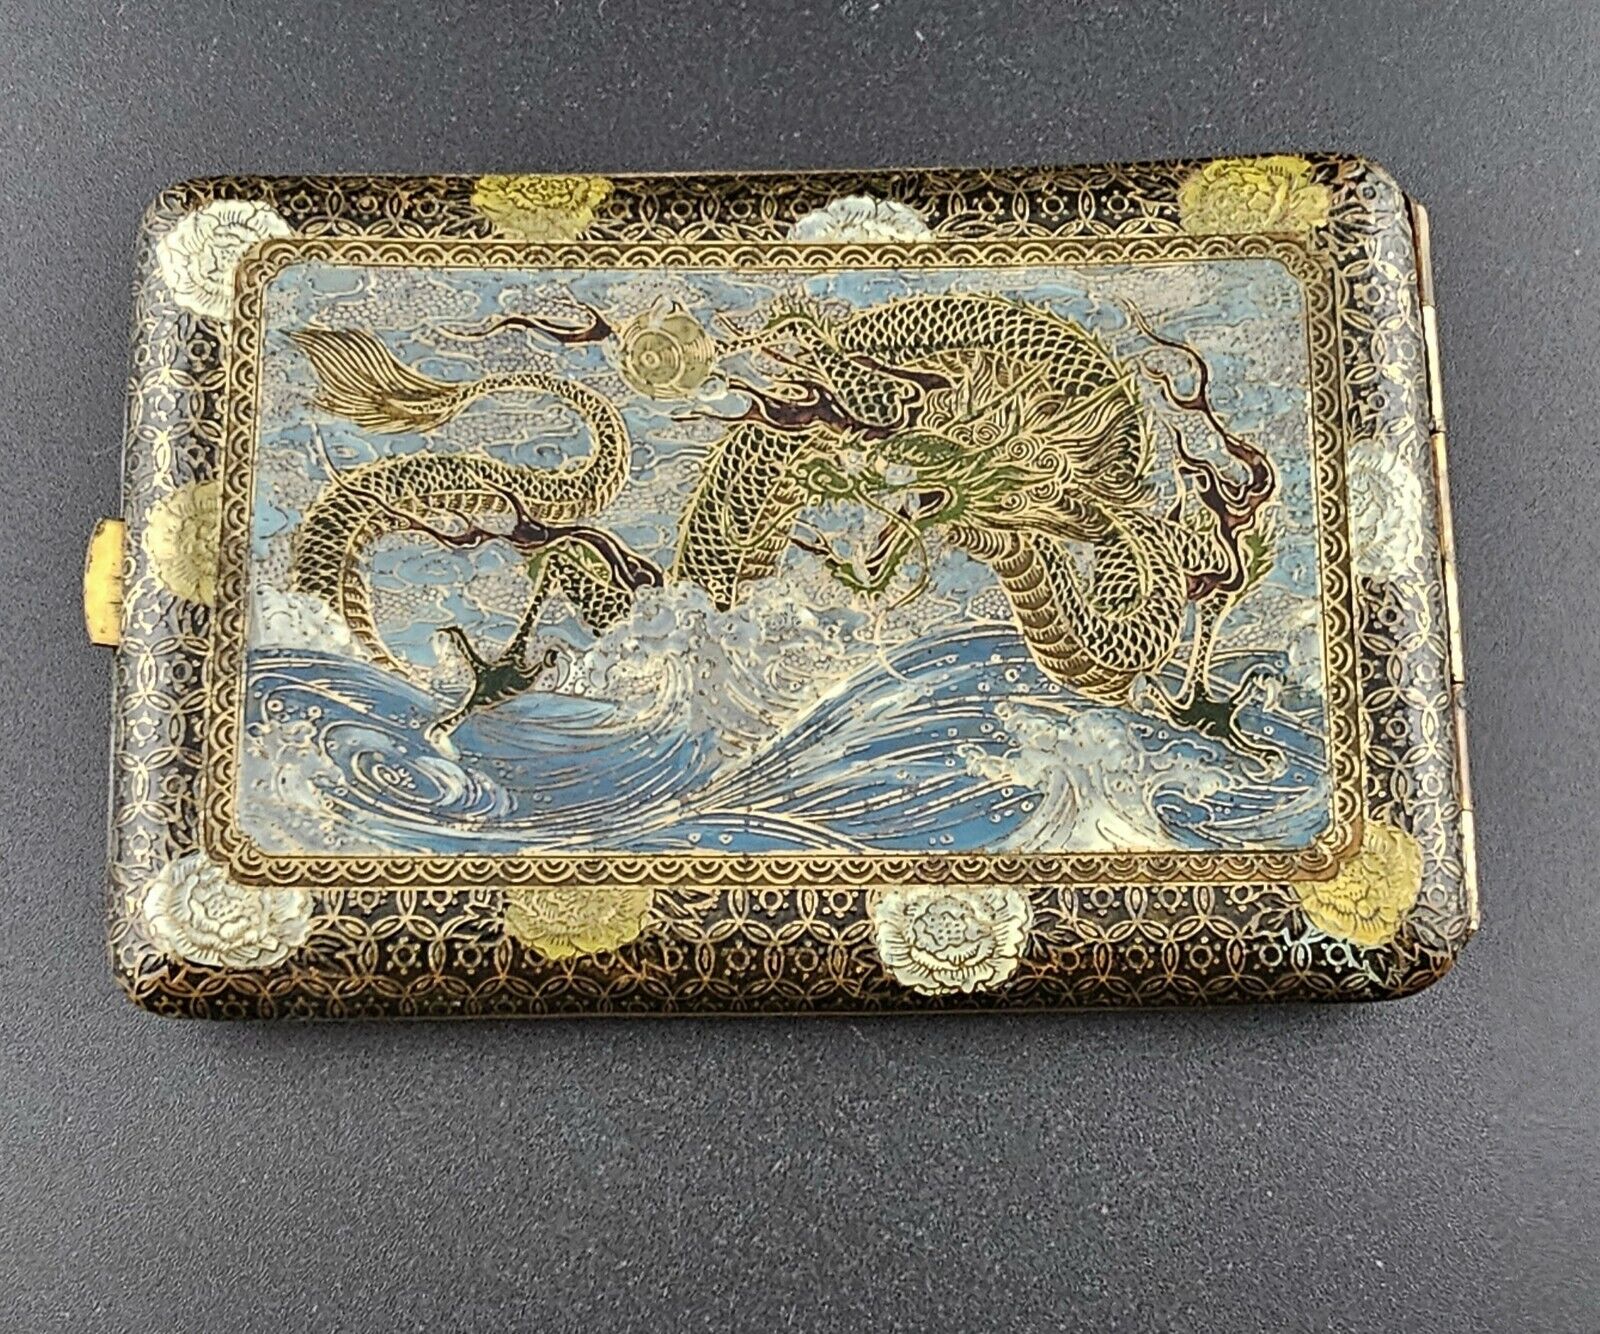 Japanese Enamel on Copper, Antique, Vintage Cigarette/Card holder(24-1230)